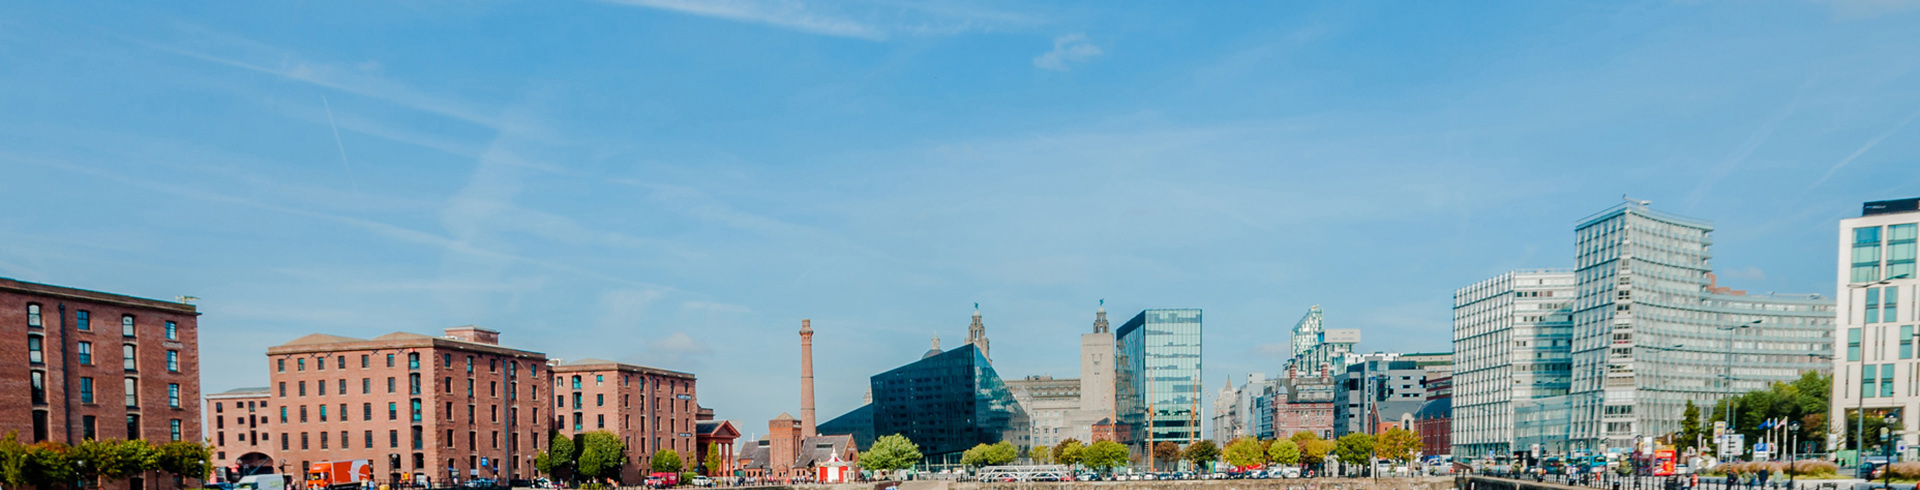 Le mélange d'architecture moderne et ancienne à Liverpool